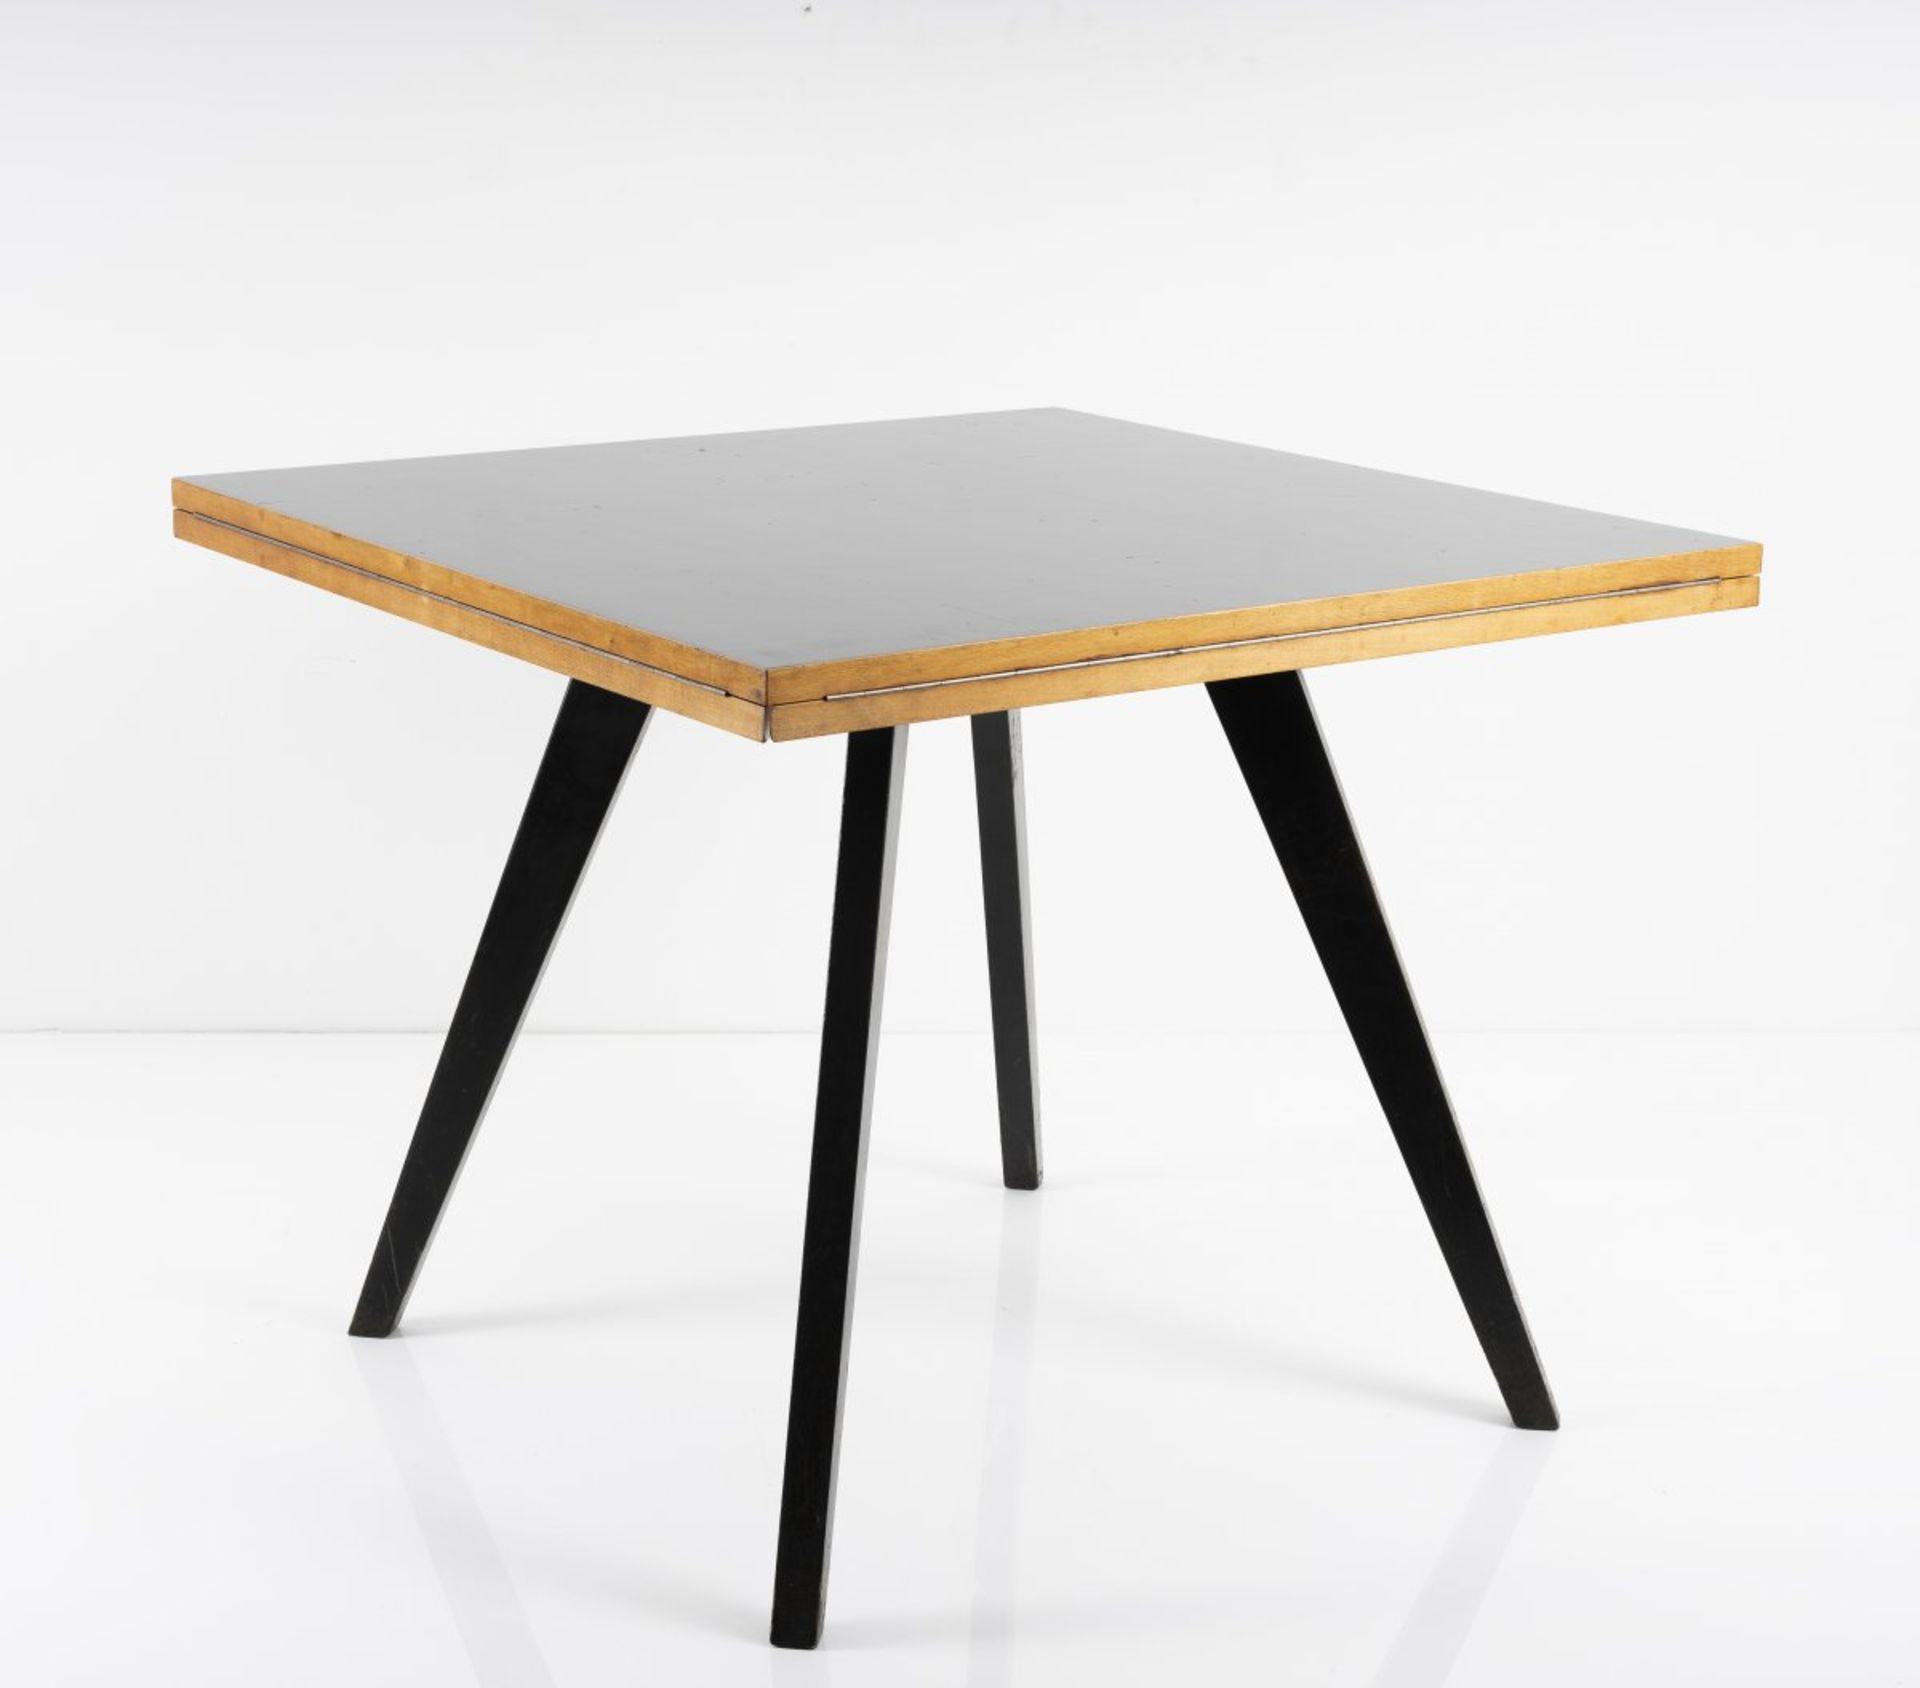 Max Bill, Tisch 'quadratrund', 1949Tisch 'quadratrund', 1949H. 73 x 90 x 90 cm bzw. Ø 127,5 cm. - Bild 3 aus 9